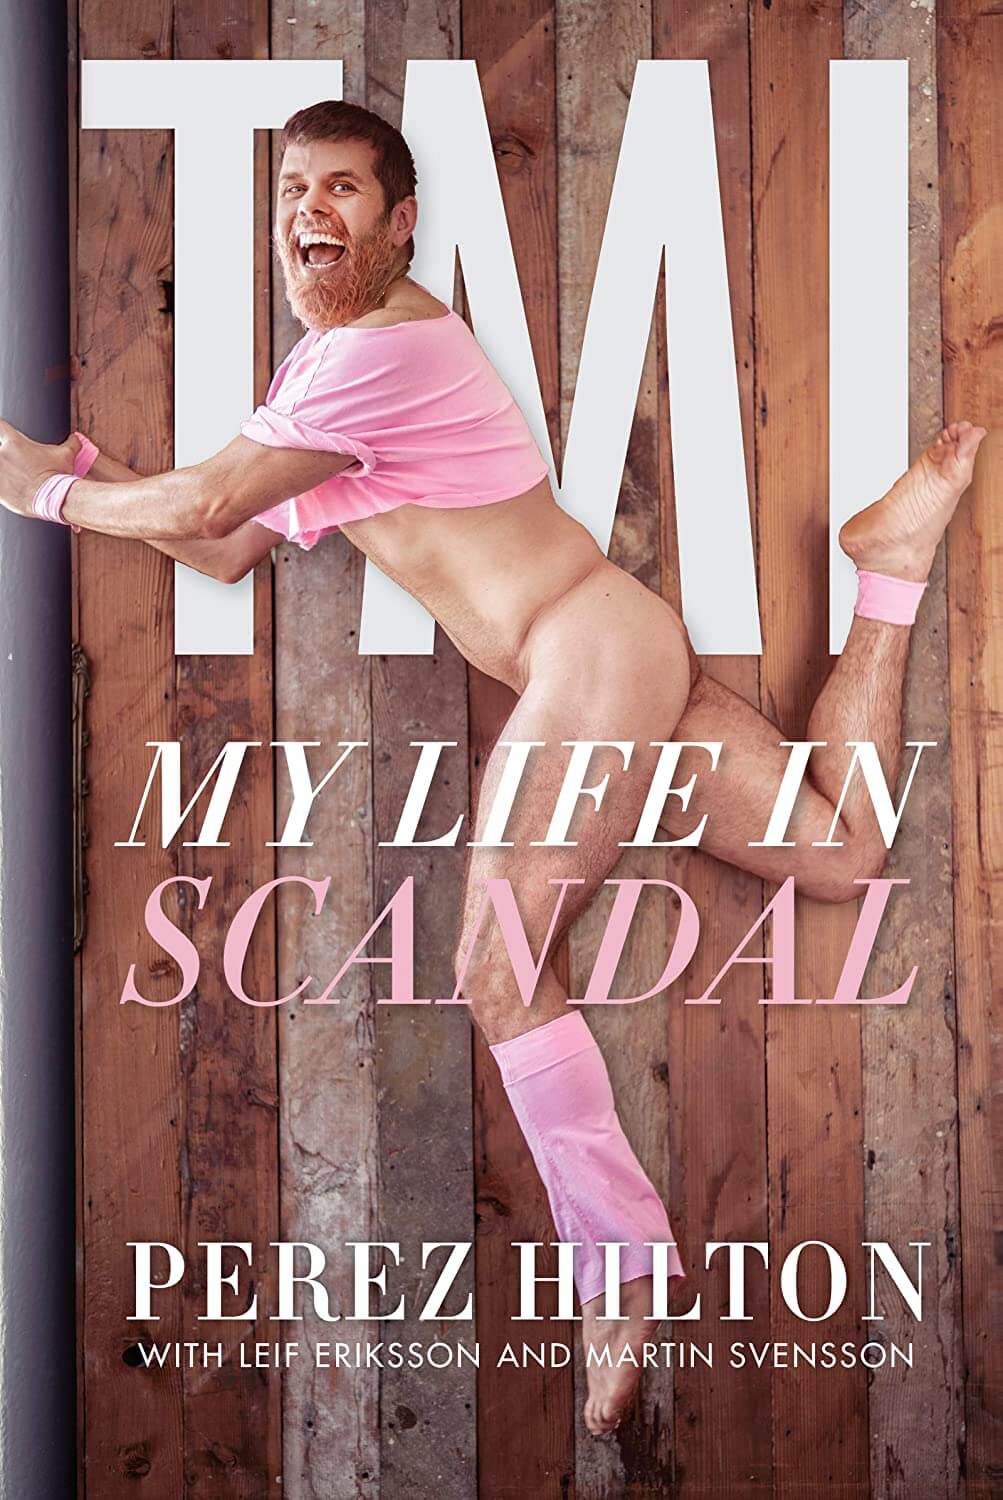 Perez Hilton: 'Preferirei che mio figlio non fosse gay' - TMI My Life In Scandal - Gay.it